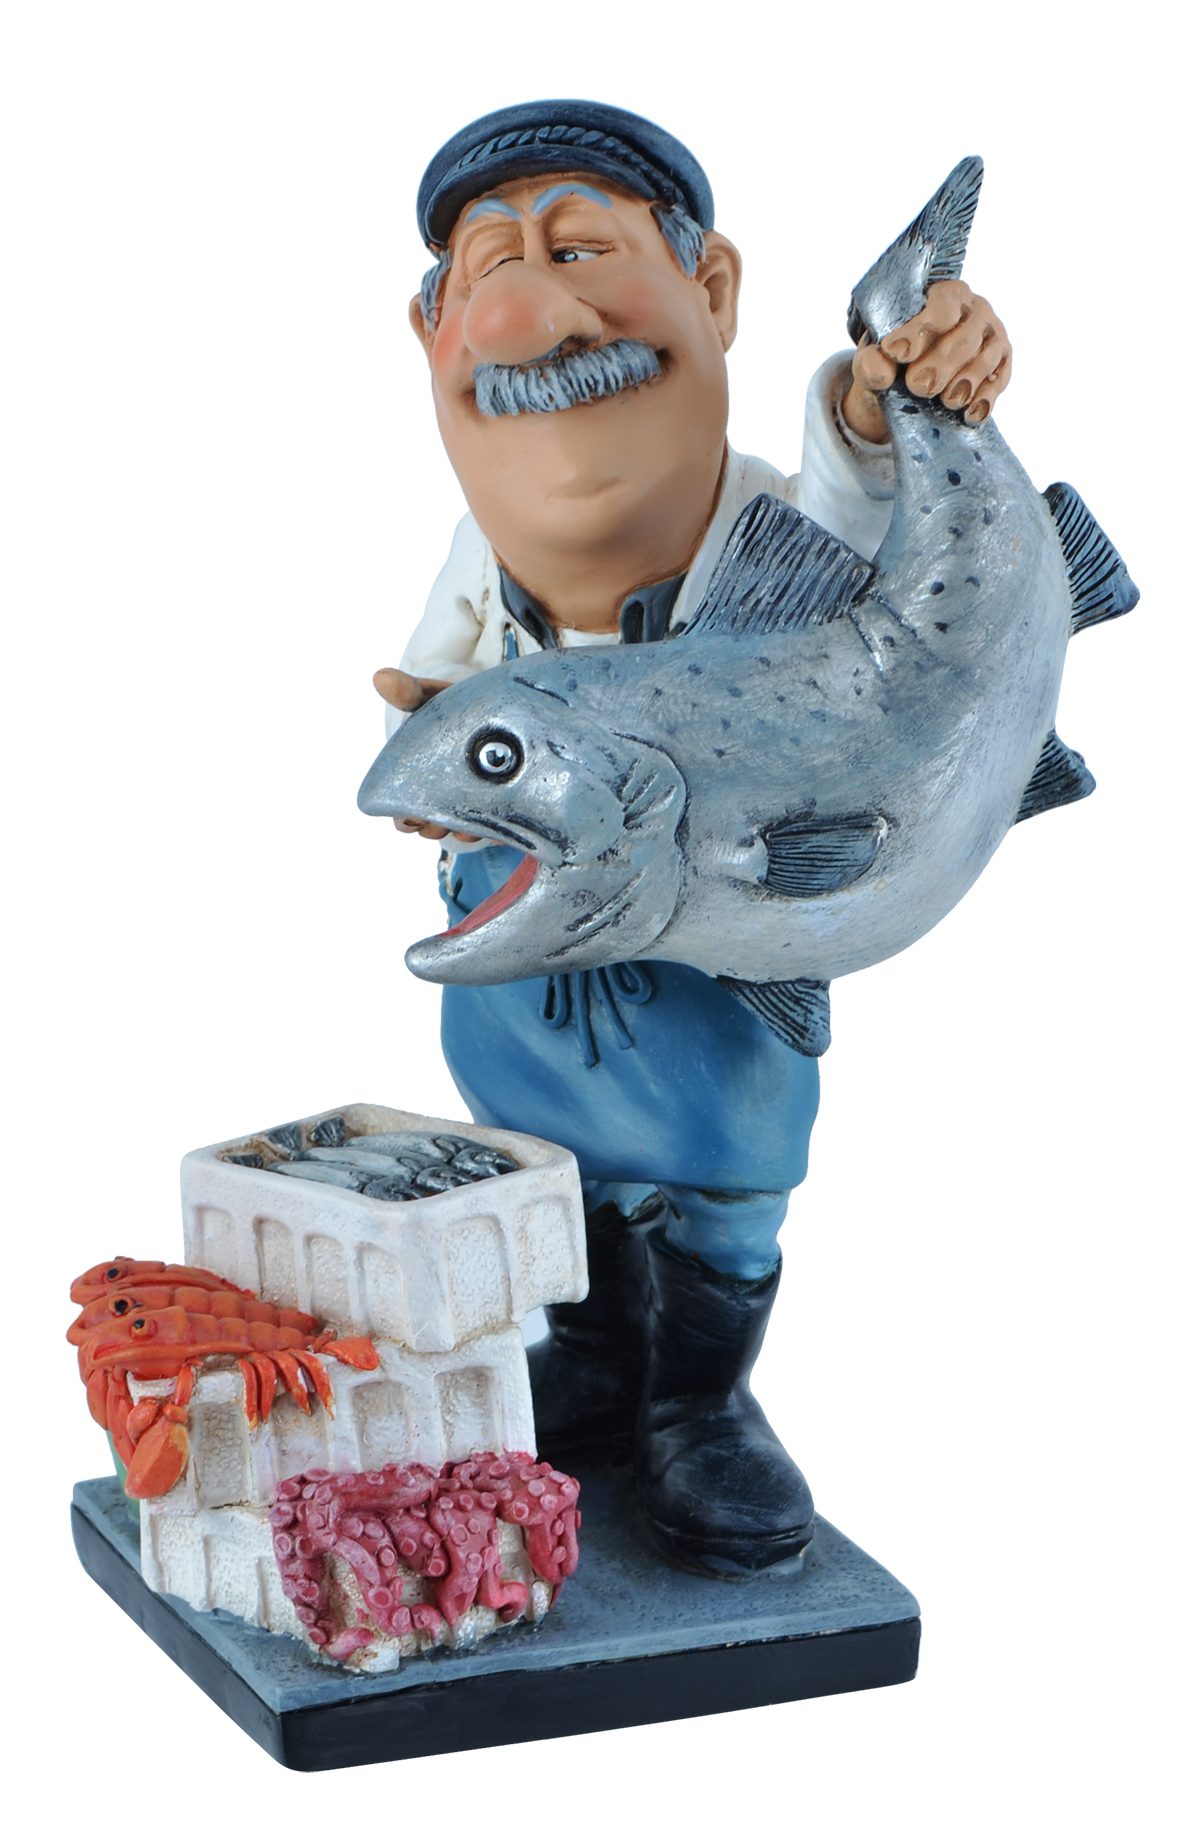 Vogler direct Gmbh Dekofigur Life, 11x8x16cm von nicht Funny Hand bemalt, hier LxBxH: "Wer Fischhändler zugreift..."